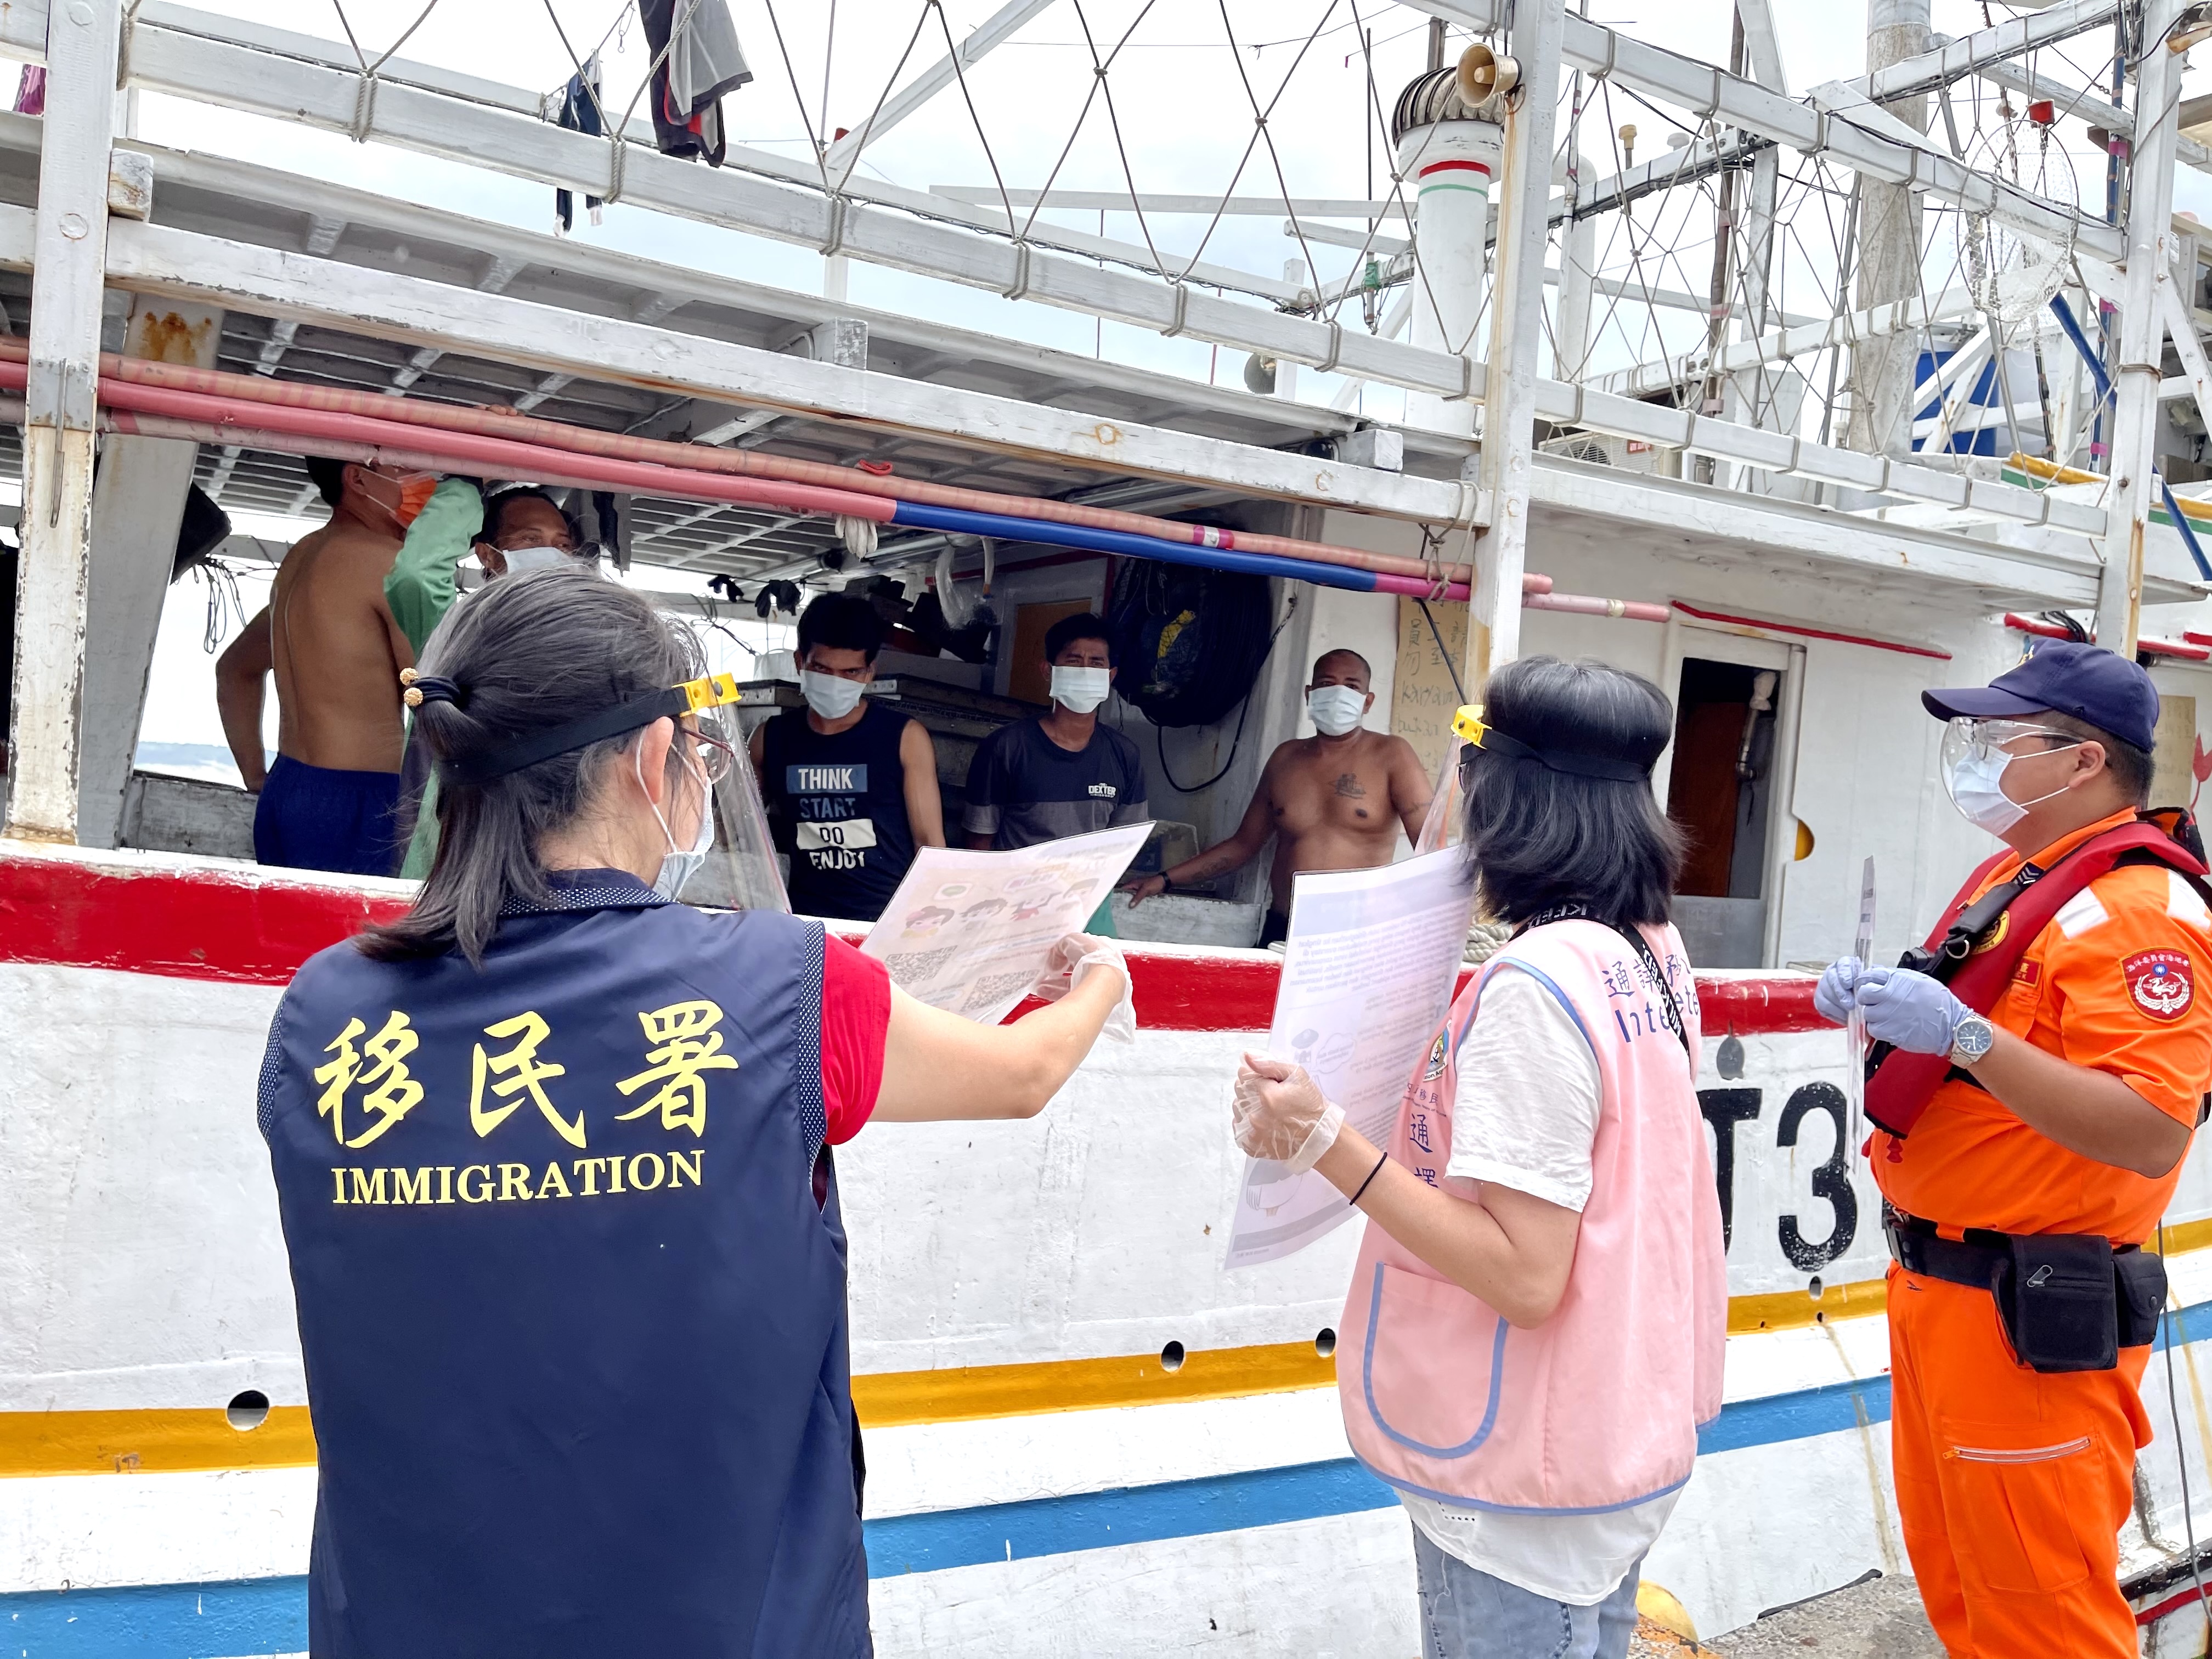 สถานีบริการเมืองนิวไทเปของกรมตรวจคนเข้าเมือง และจุดตรวจรักษาความปลอดภัยท่าเรือประมงในท้องถิ่น ได้ร่วมกันประกาศมาตรการป้องกันการแพร่ระบาดให้กับชาวประมงต่างชาติ ในพื้นที่ท่าเรือประมง Fuji, Guihou, Sugang และ Wanli ทั้งสี่แห่ง รูปภาพ/โดย สถานีบริการเมืองนิวไทเป